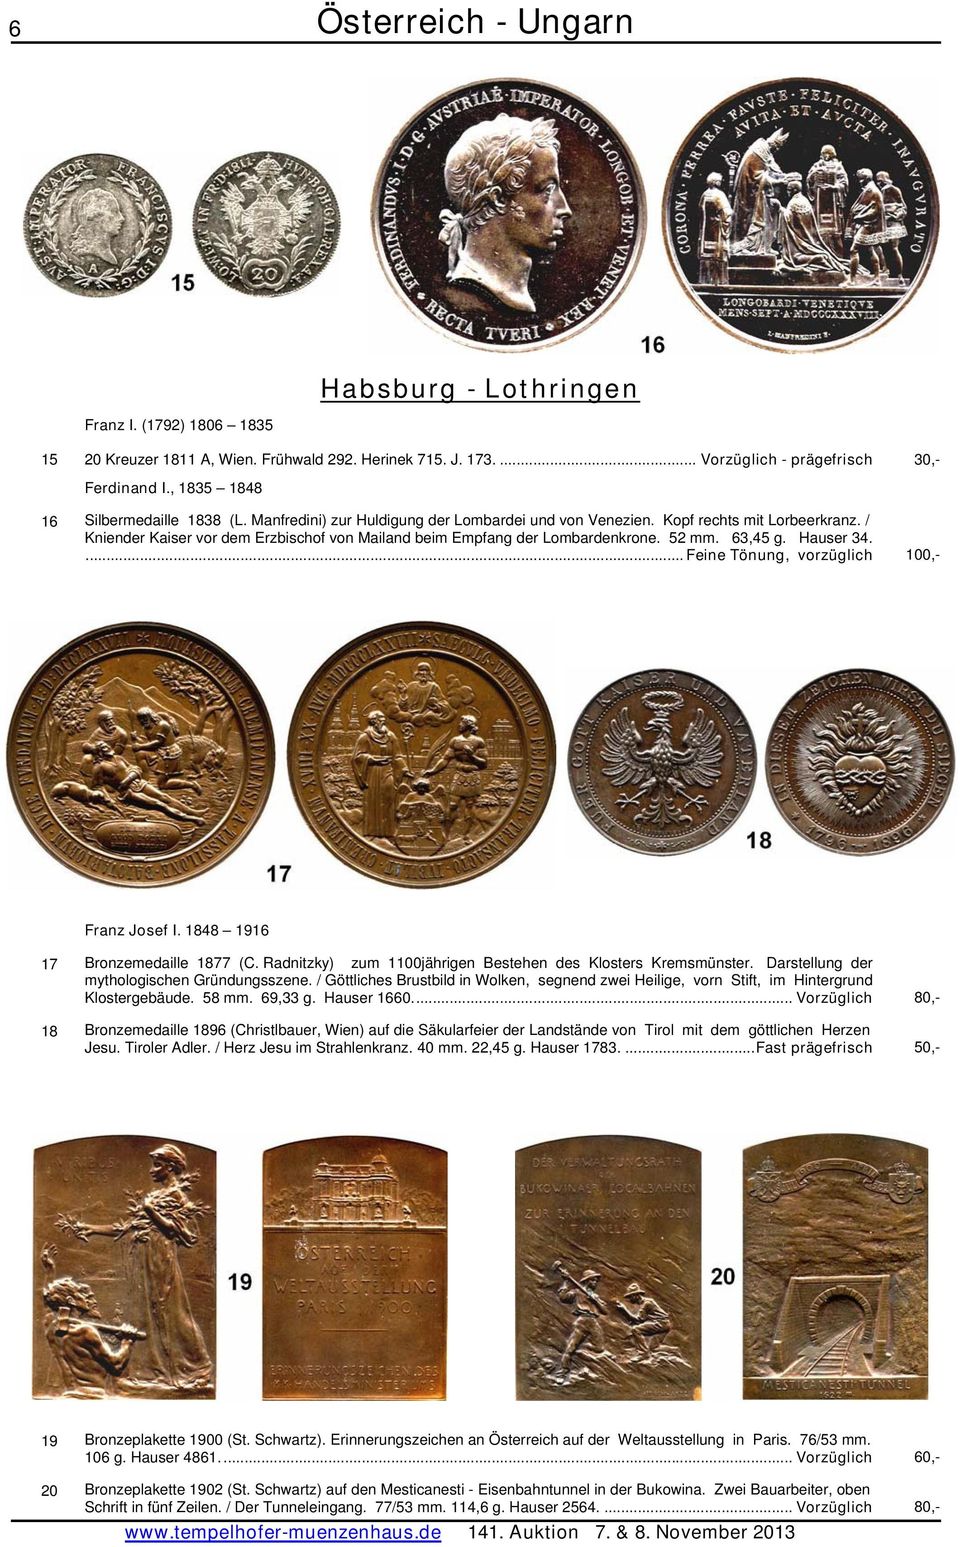 ... Feine Tönung, vorzüglich 100,- 17 Bronzemedaille 1877 (C. Radnitzky) zum 1100jährigen Bestehen des Klosters Kremsmünster. Darstellung der mythologischen Gründungsszene.